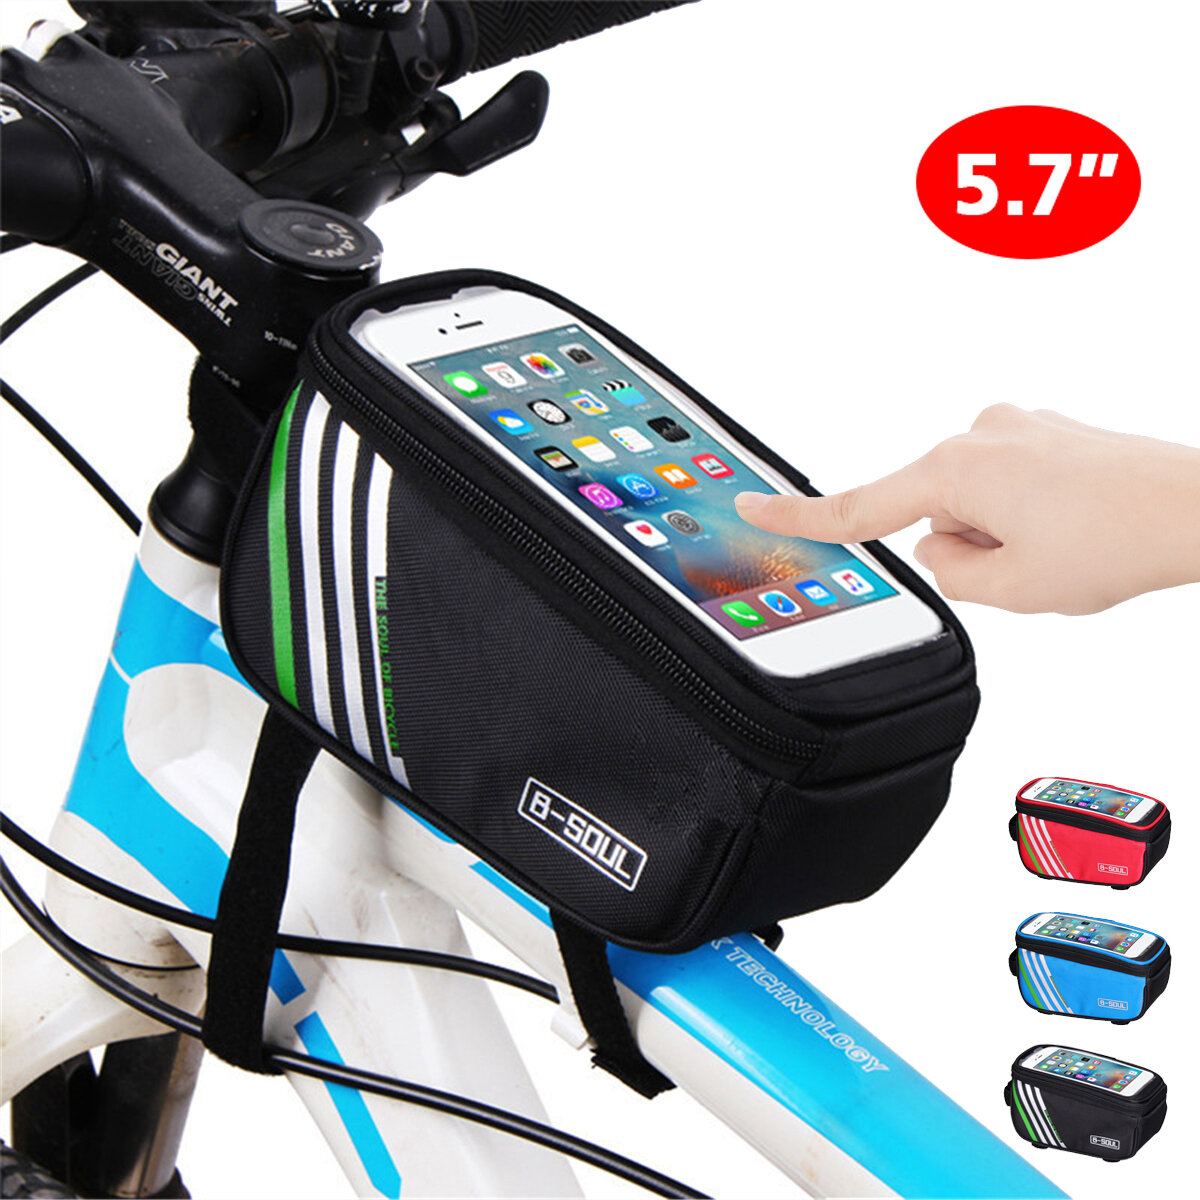 B-SOUL 5.7 Inch Tubo de teléfono de bicicleta con pantalla táctil Bolsa con agujeros Auricular Delantero de bicicleta a